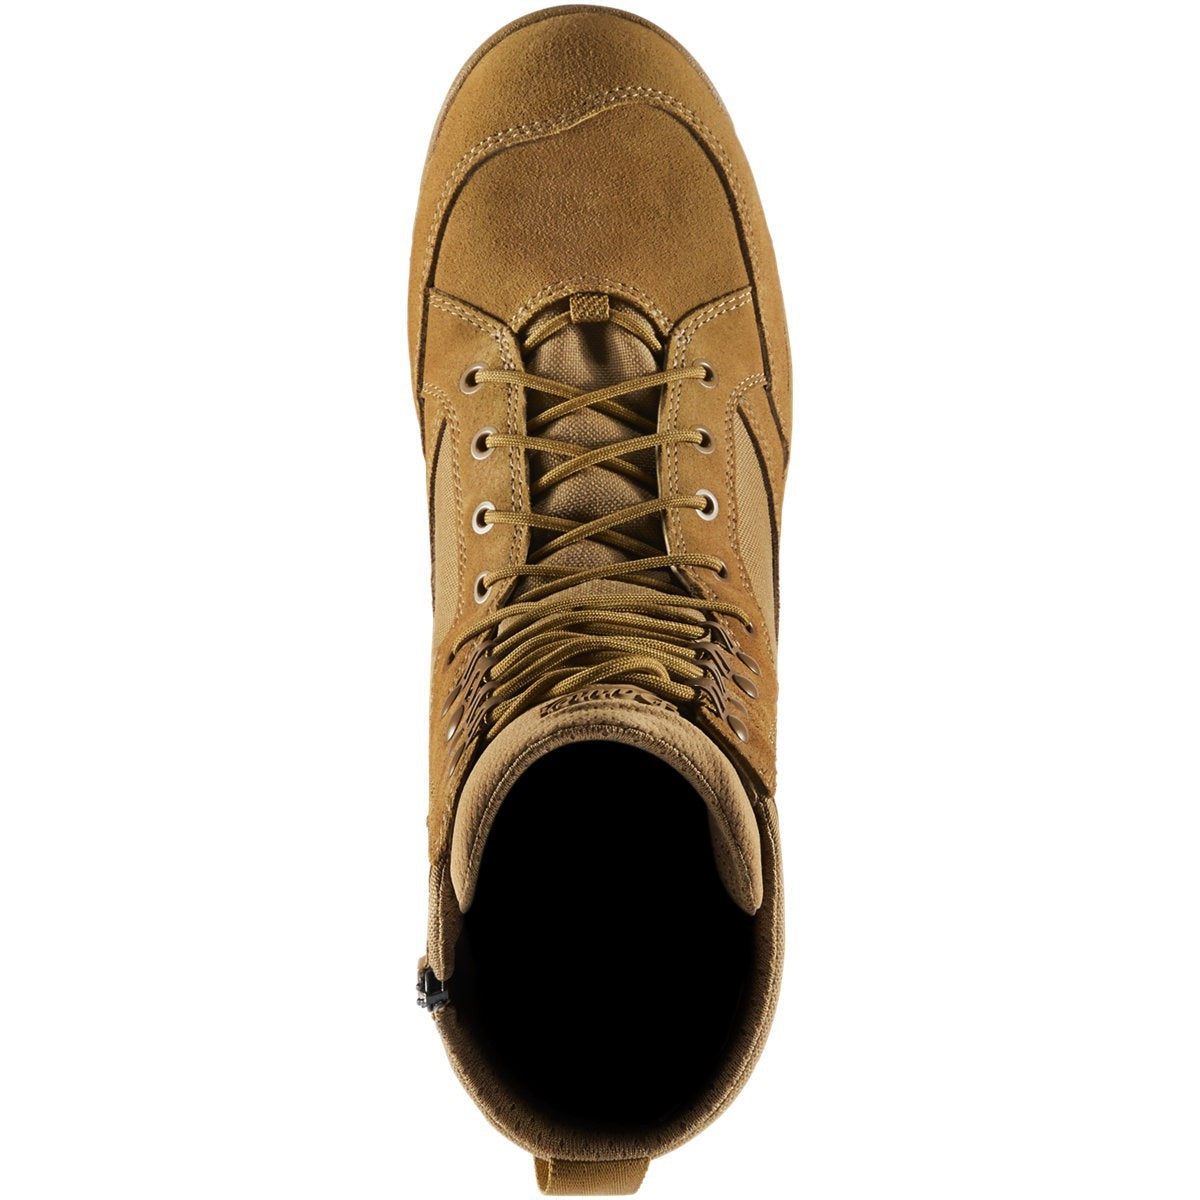 Danner Men's Tanicus 8" CT Side Zip Military Boot -Coyote- 55322  - Overlook Boots